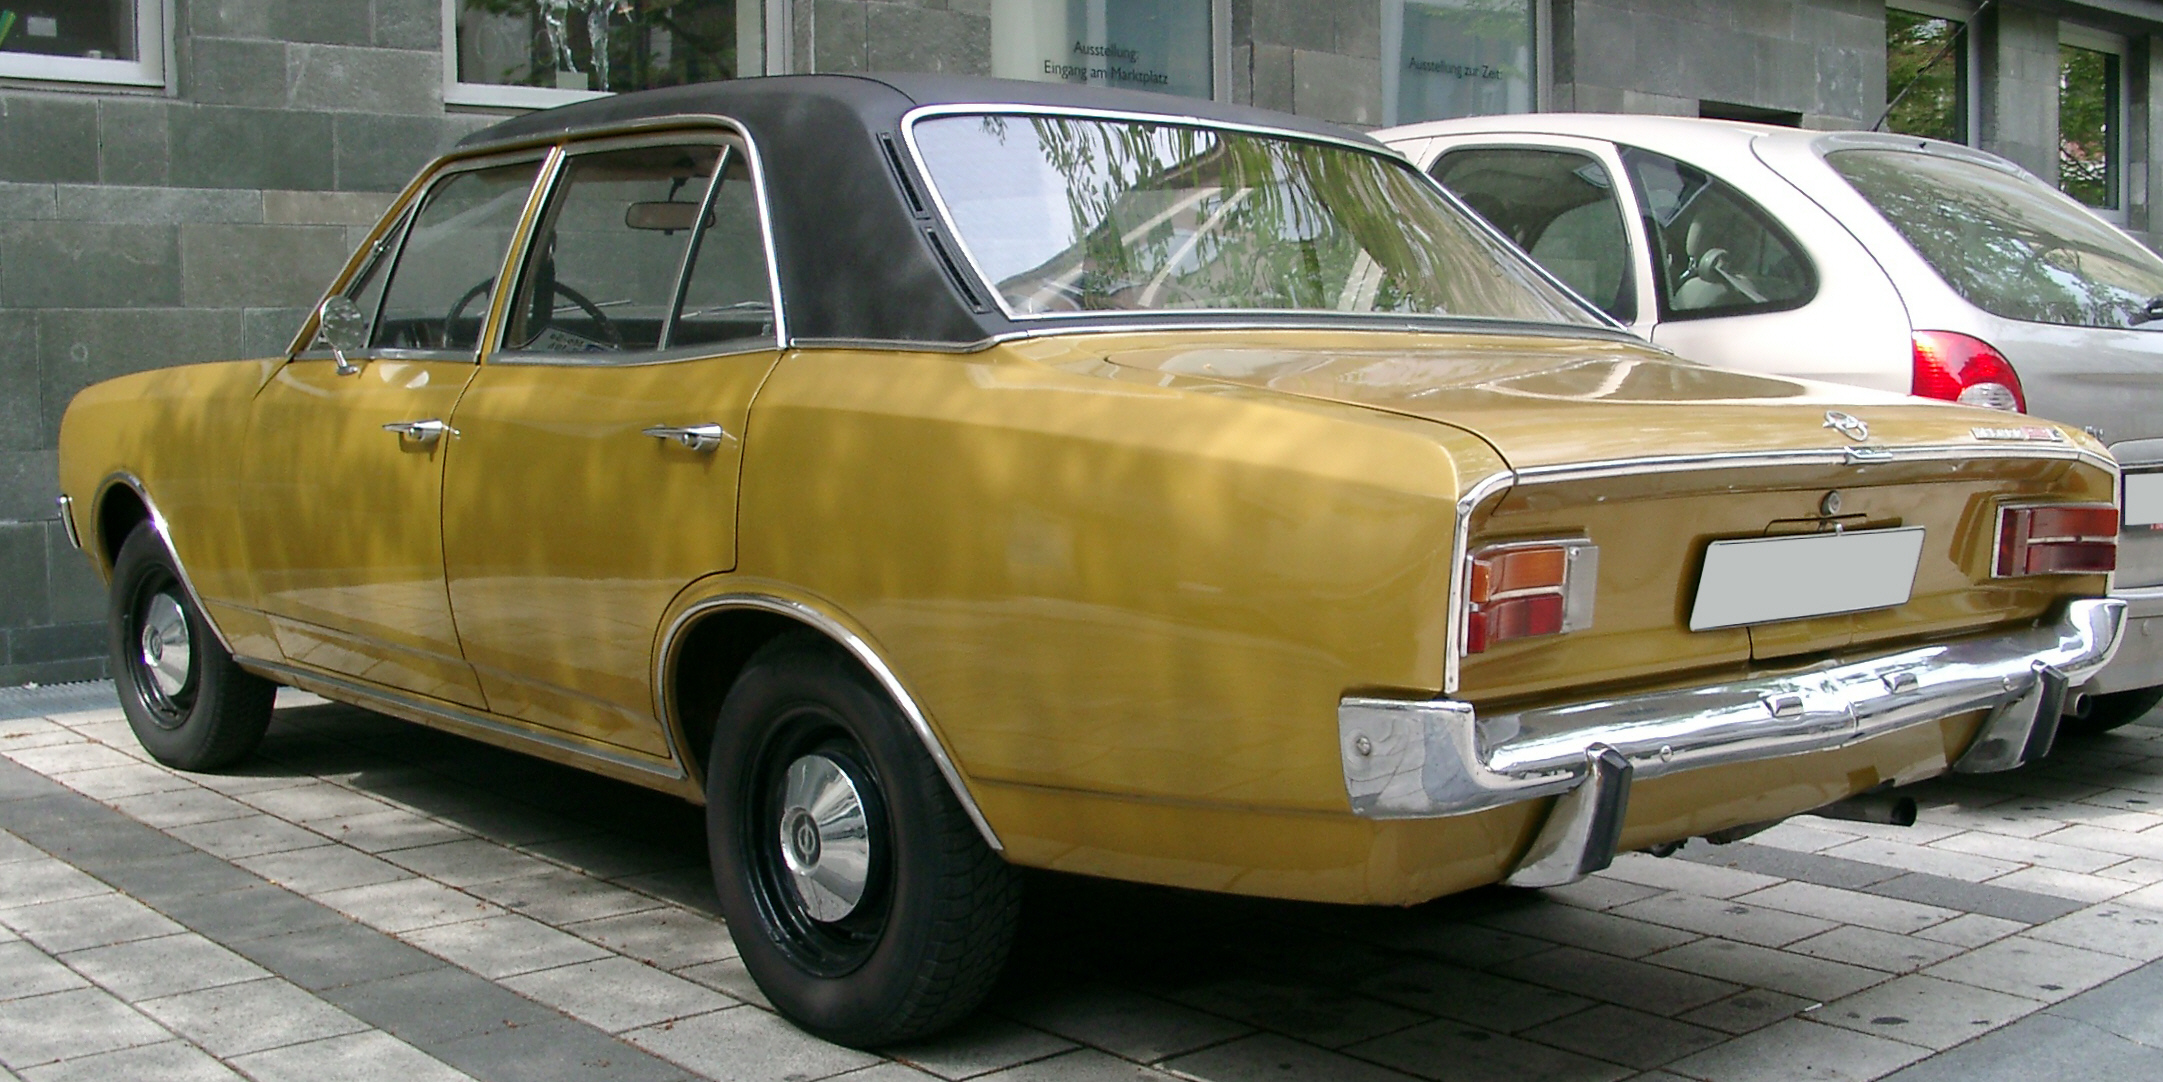 File:Opel Rekord C rear 20070418.jpg